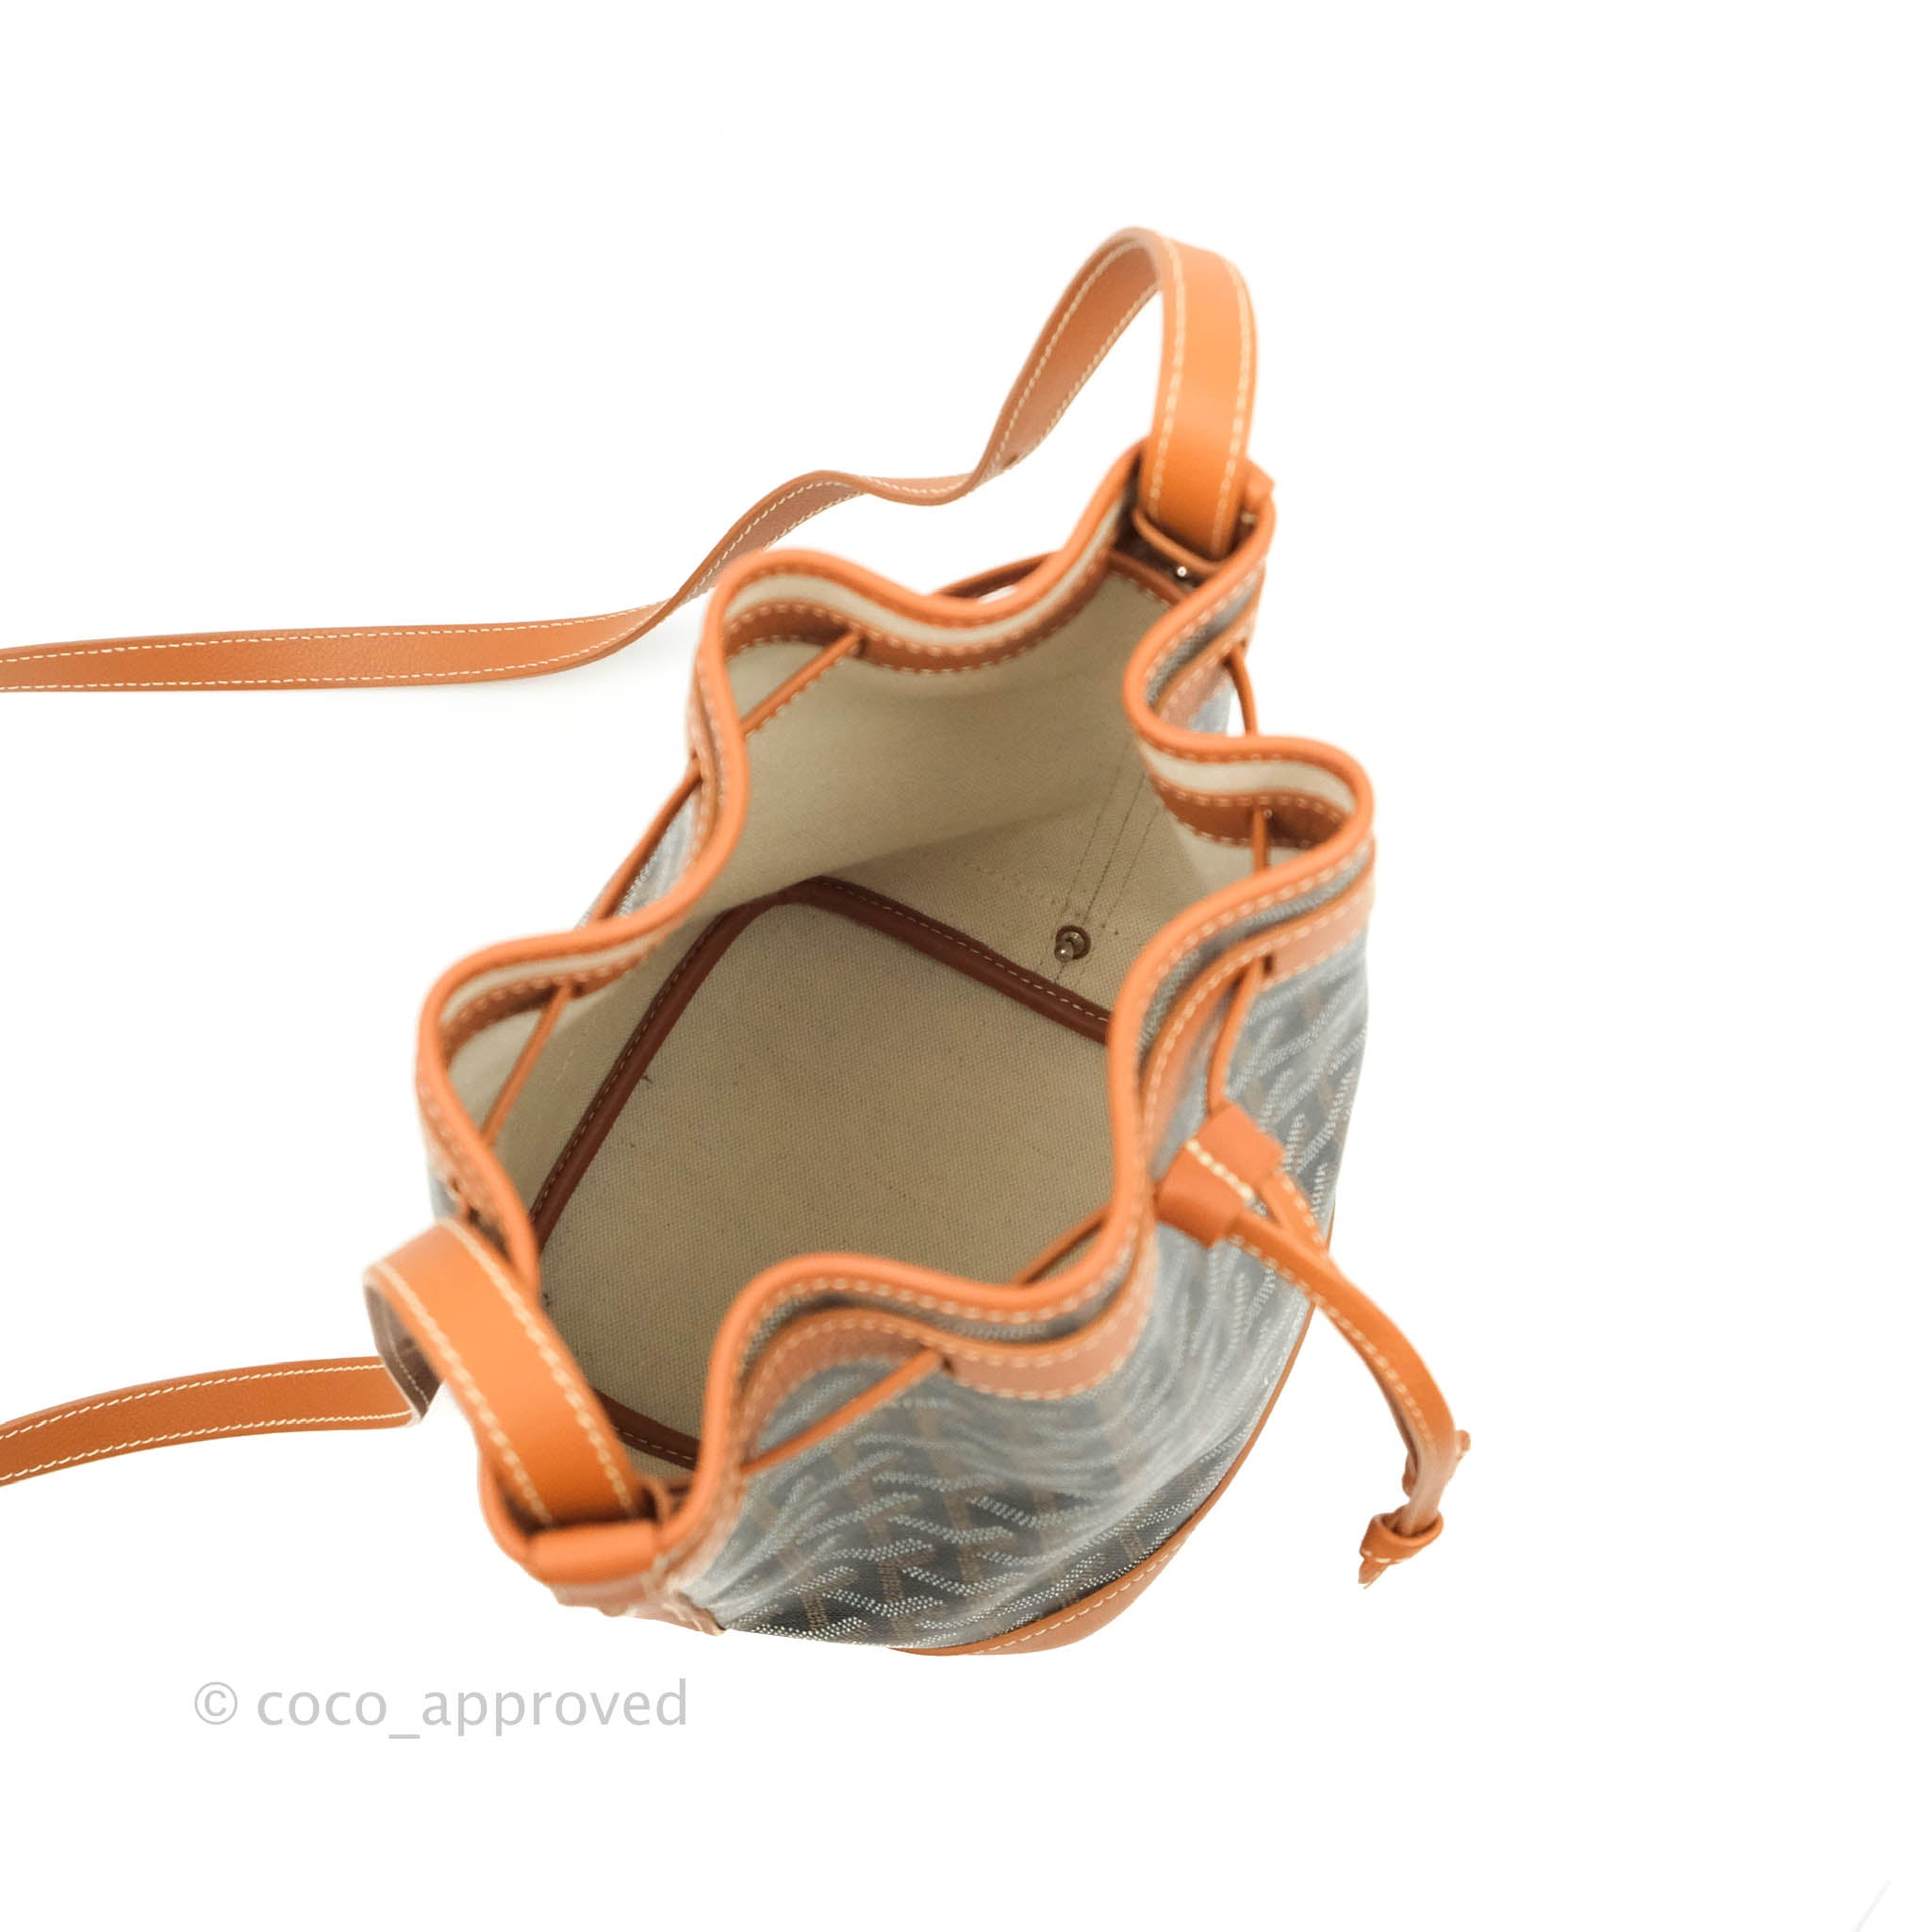 New* GOYARD Goyardine petit flot bucket bag – Lovestillore Shop